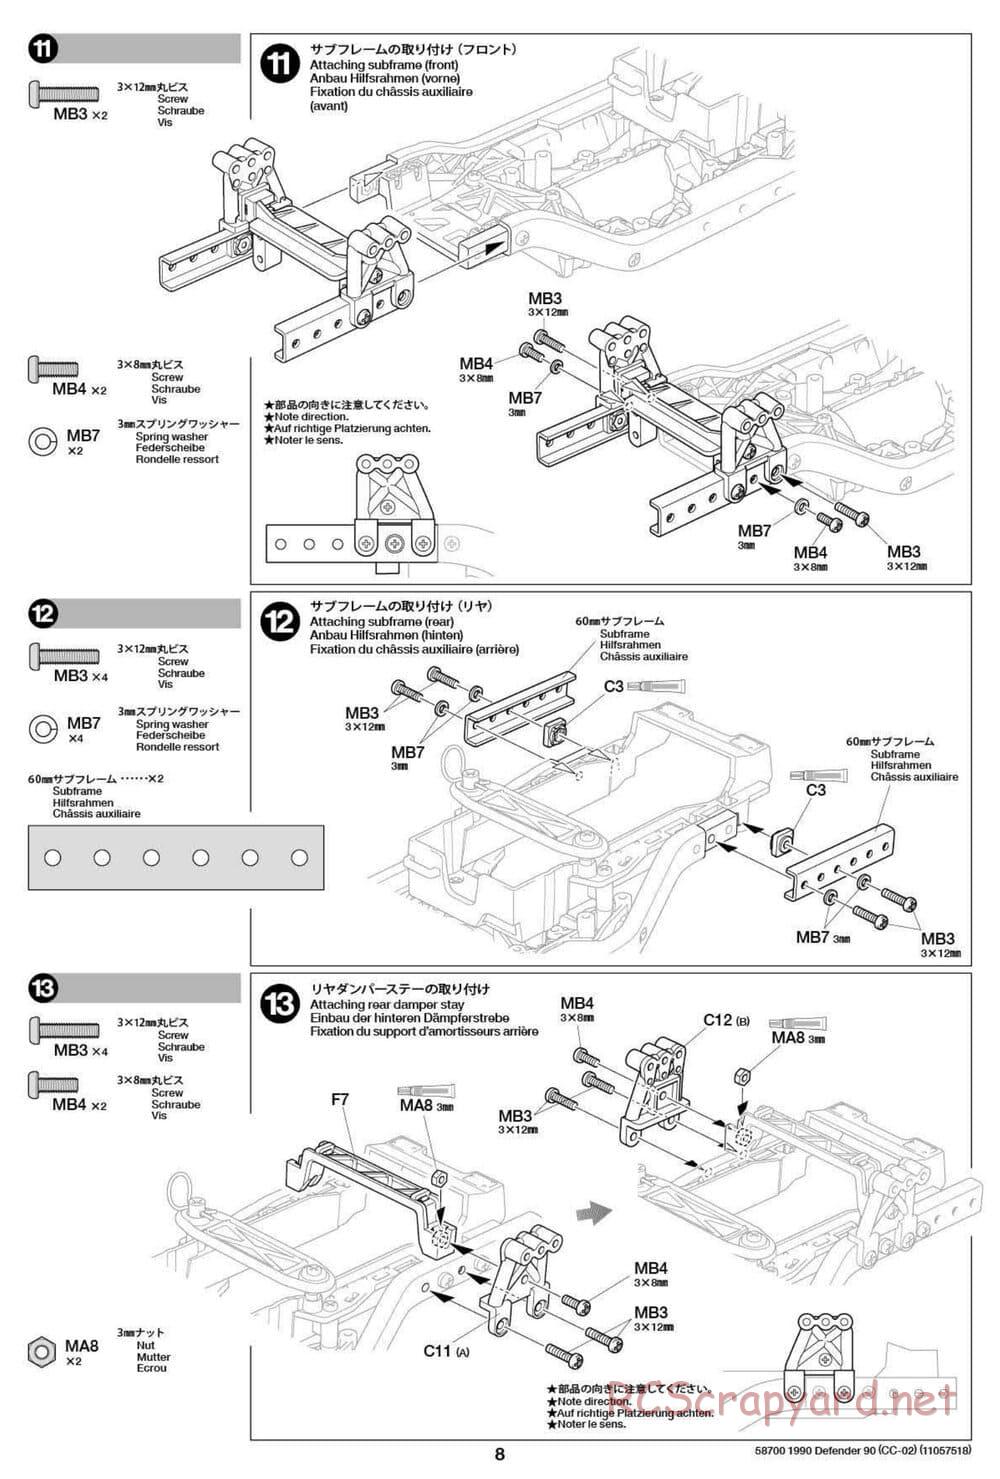 Tamiya - 1990 Land Rover Defender 90 - CC-02 Chassis - Manual - Page 8